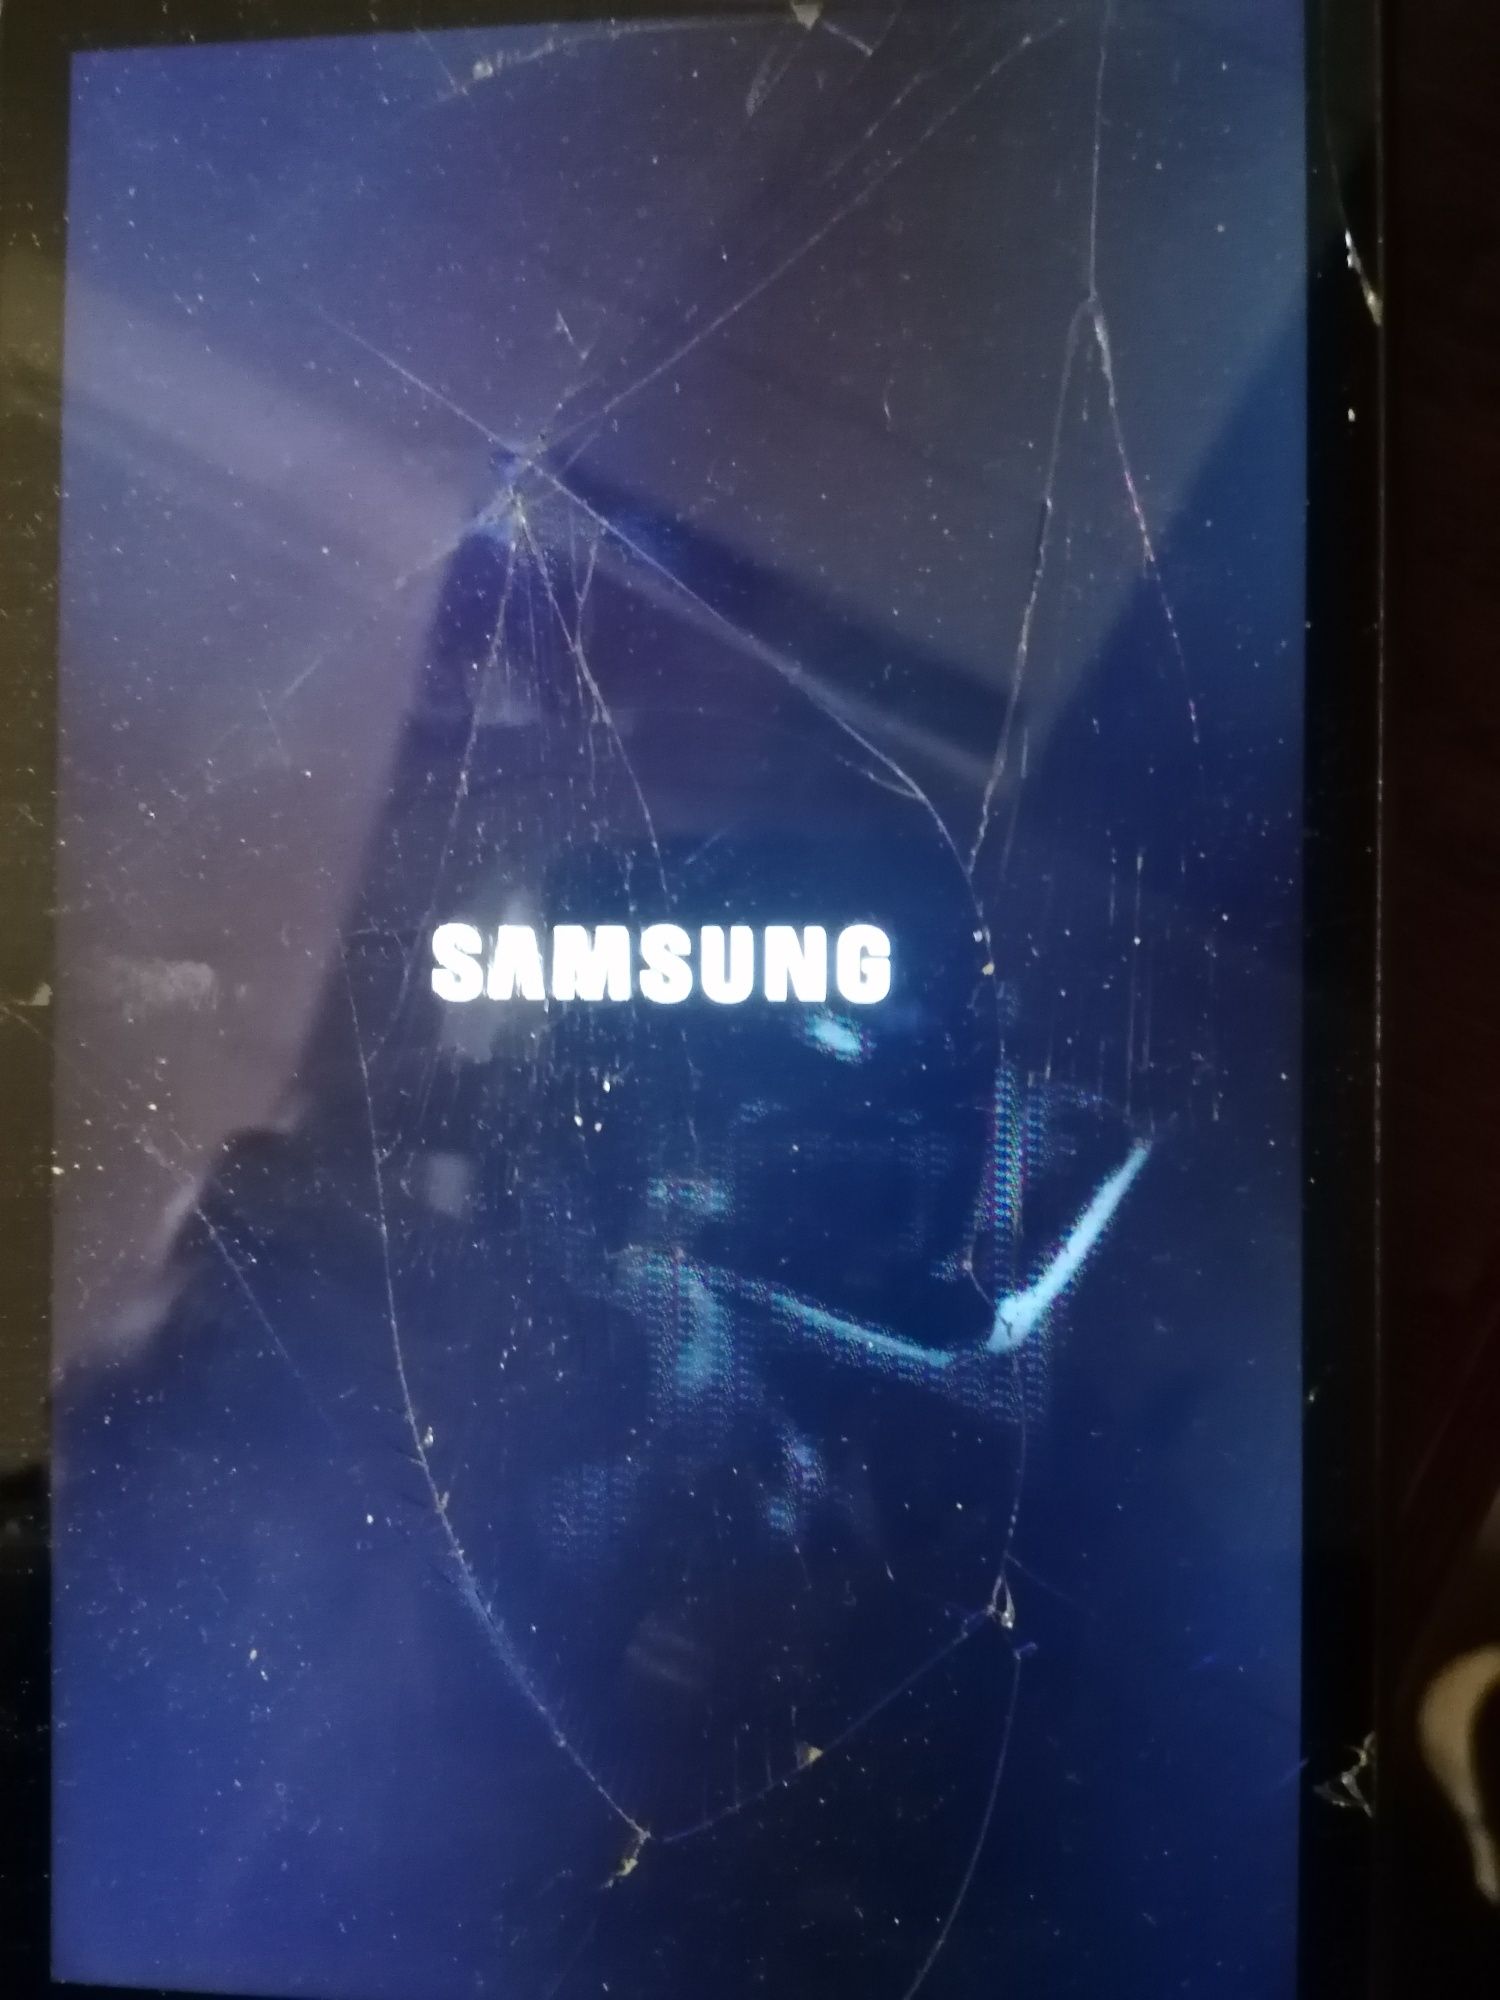 Samsung GalaxyTabA,130 lei negociabil